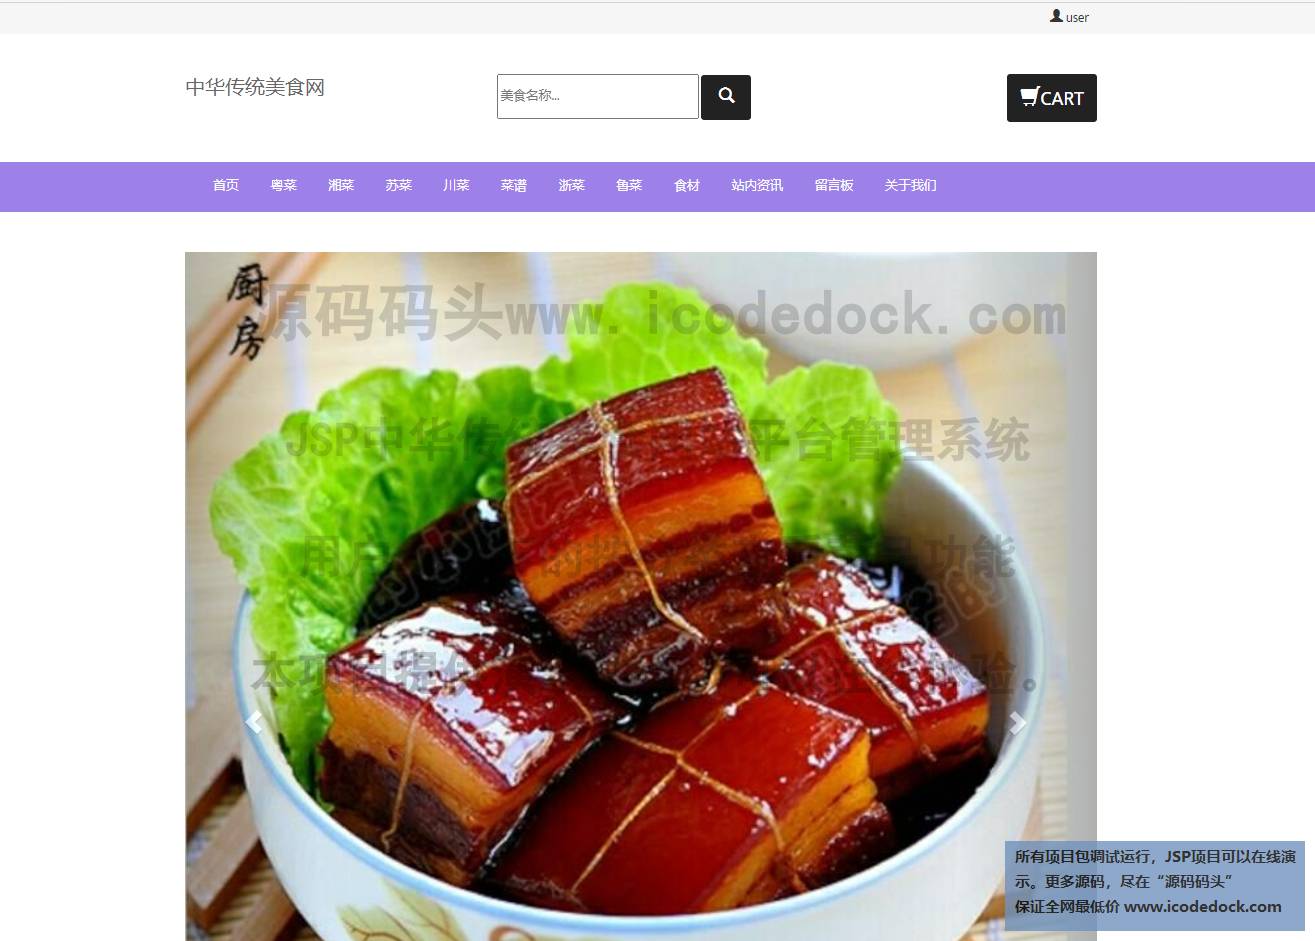 源码码头-JSP中华传统美食网站平台管理系统-用户角色-按分类查看菜品